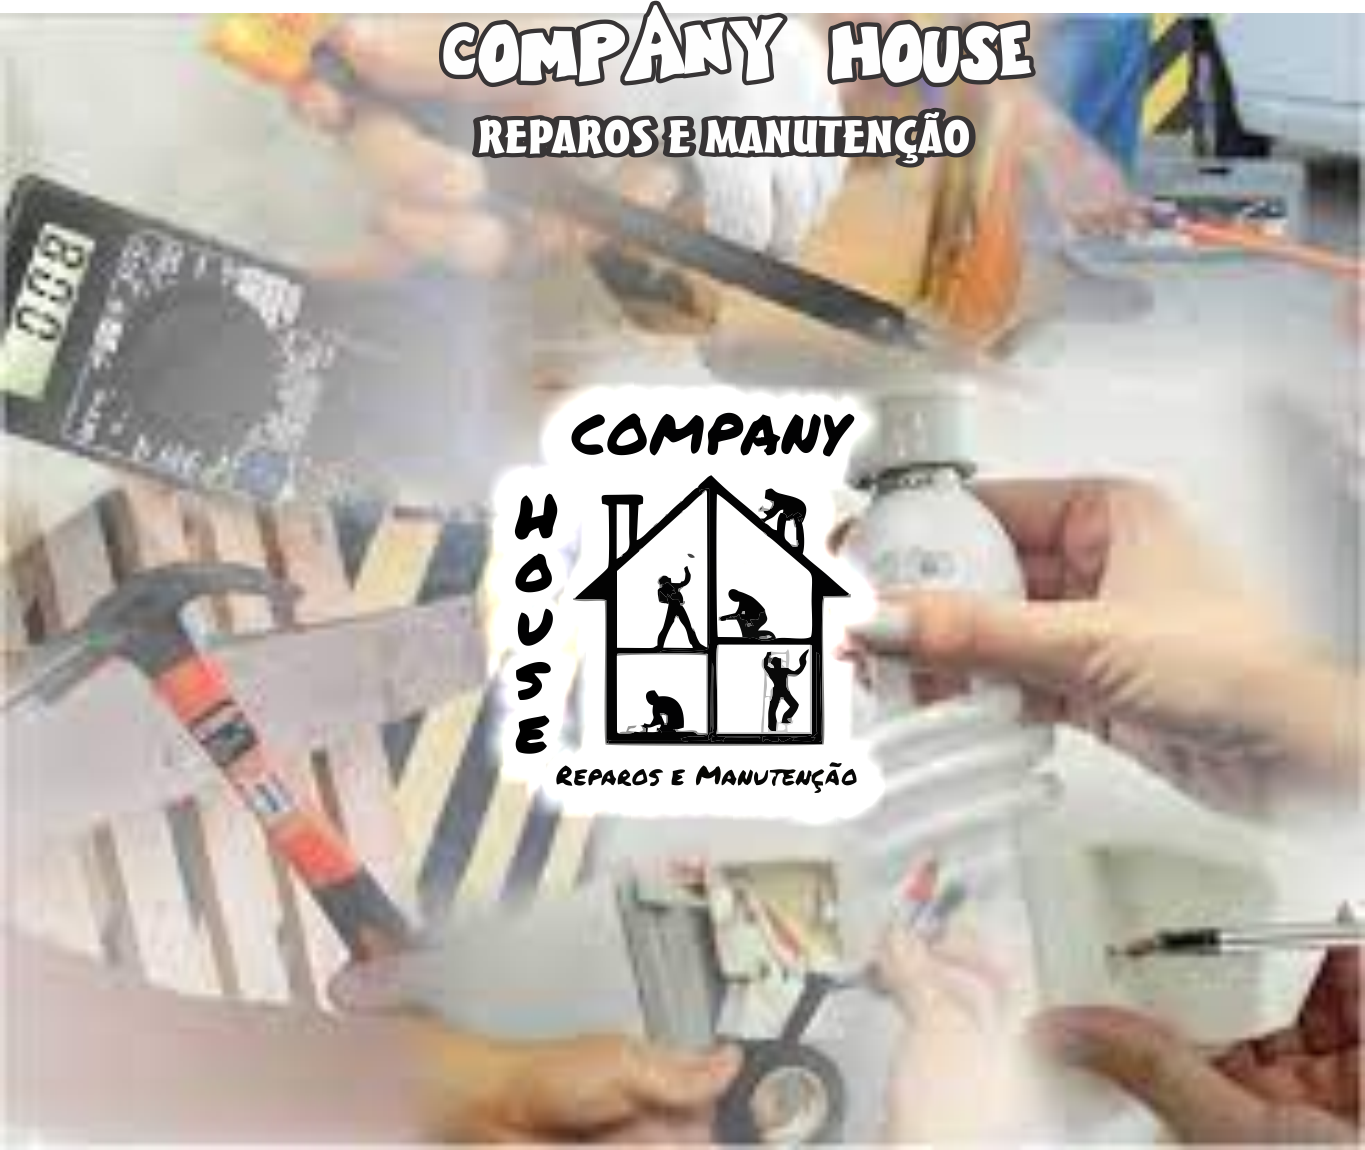 House Company Reparos e Manutenção      Fones: (41)98785-8916